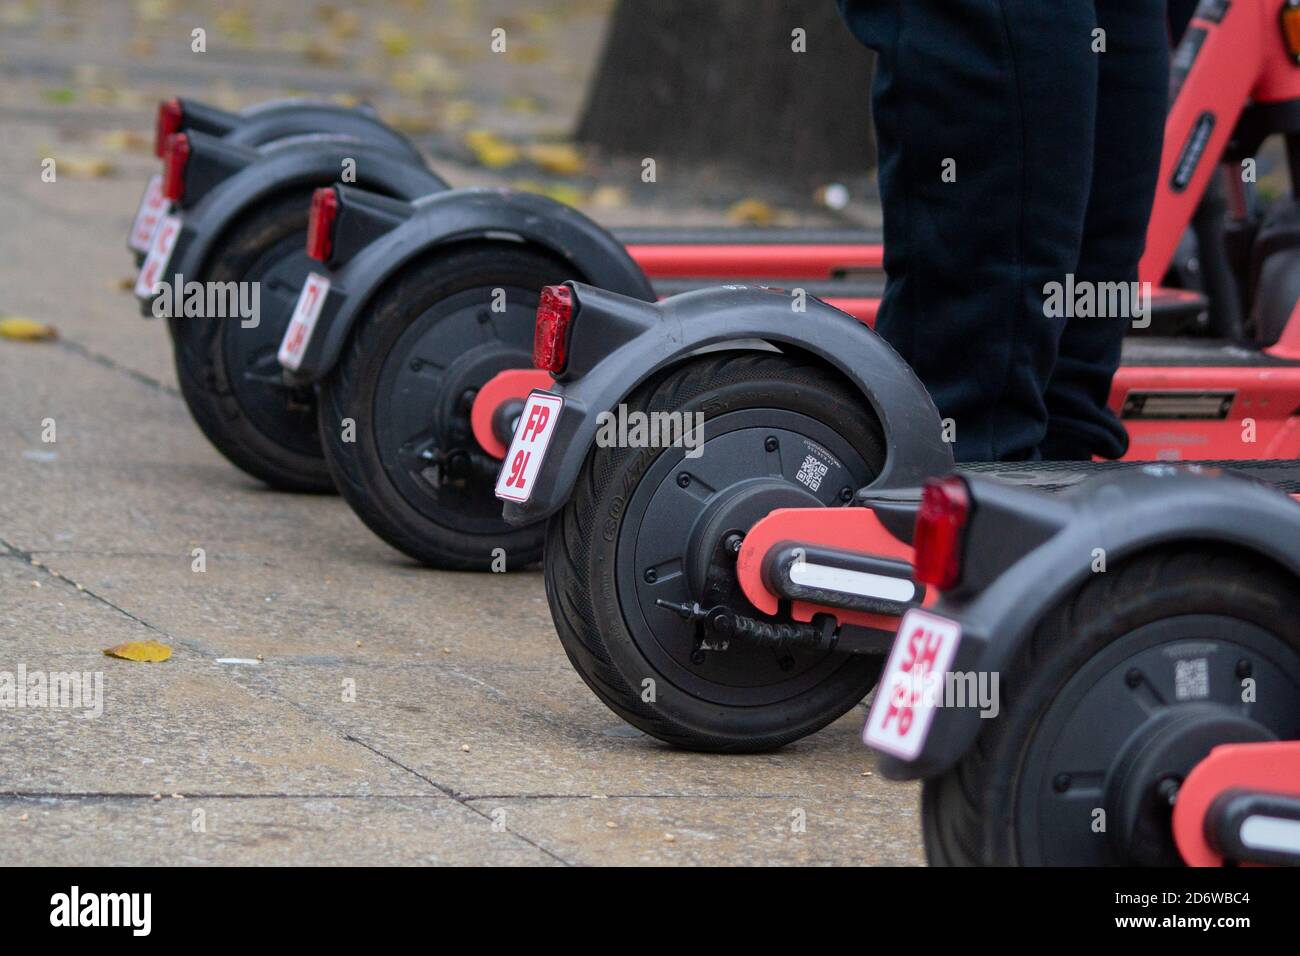 VOI Elektro-E-Scooter mit Nummer / Typenschilder in Birmingham, Großbritannien, um antisoziales Verhalten auf den Geräten zu bekämpfen Stockfoto